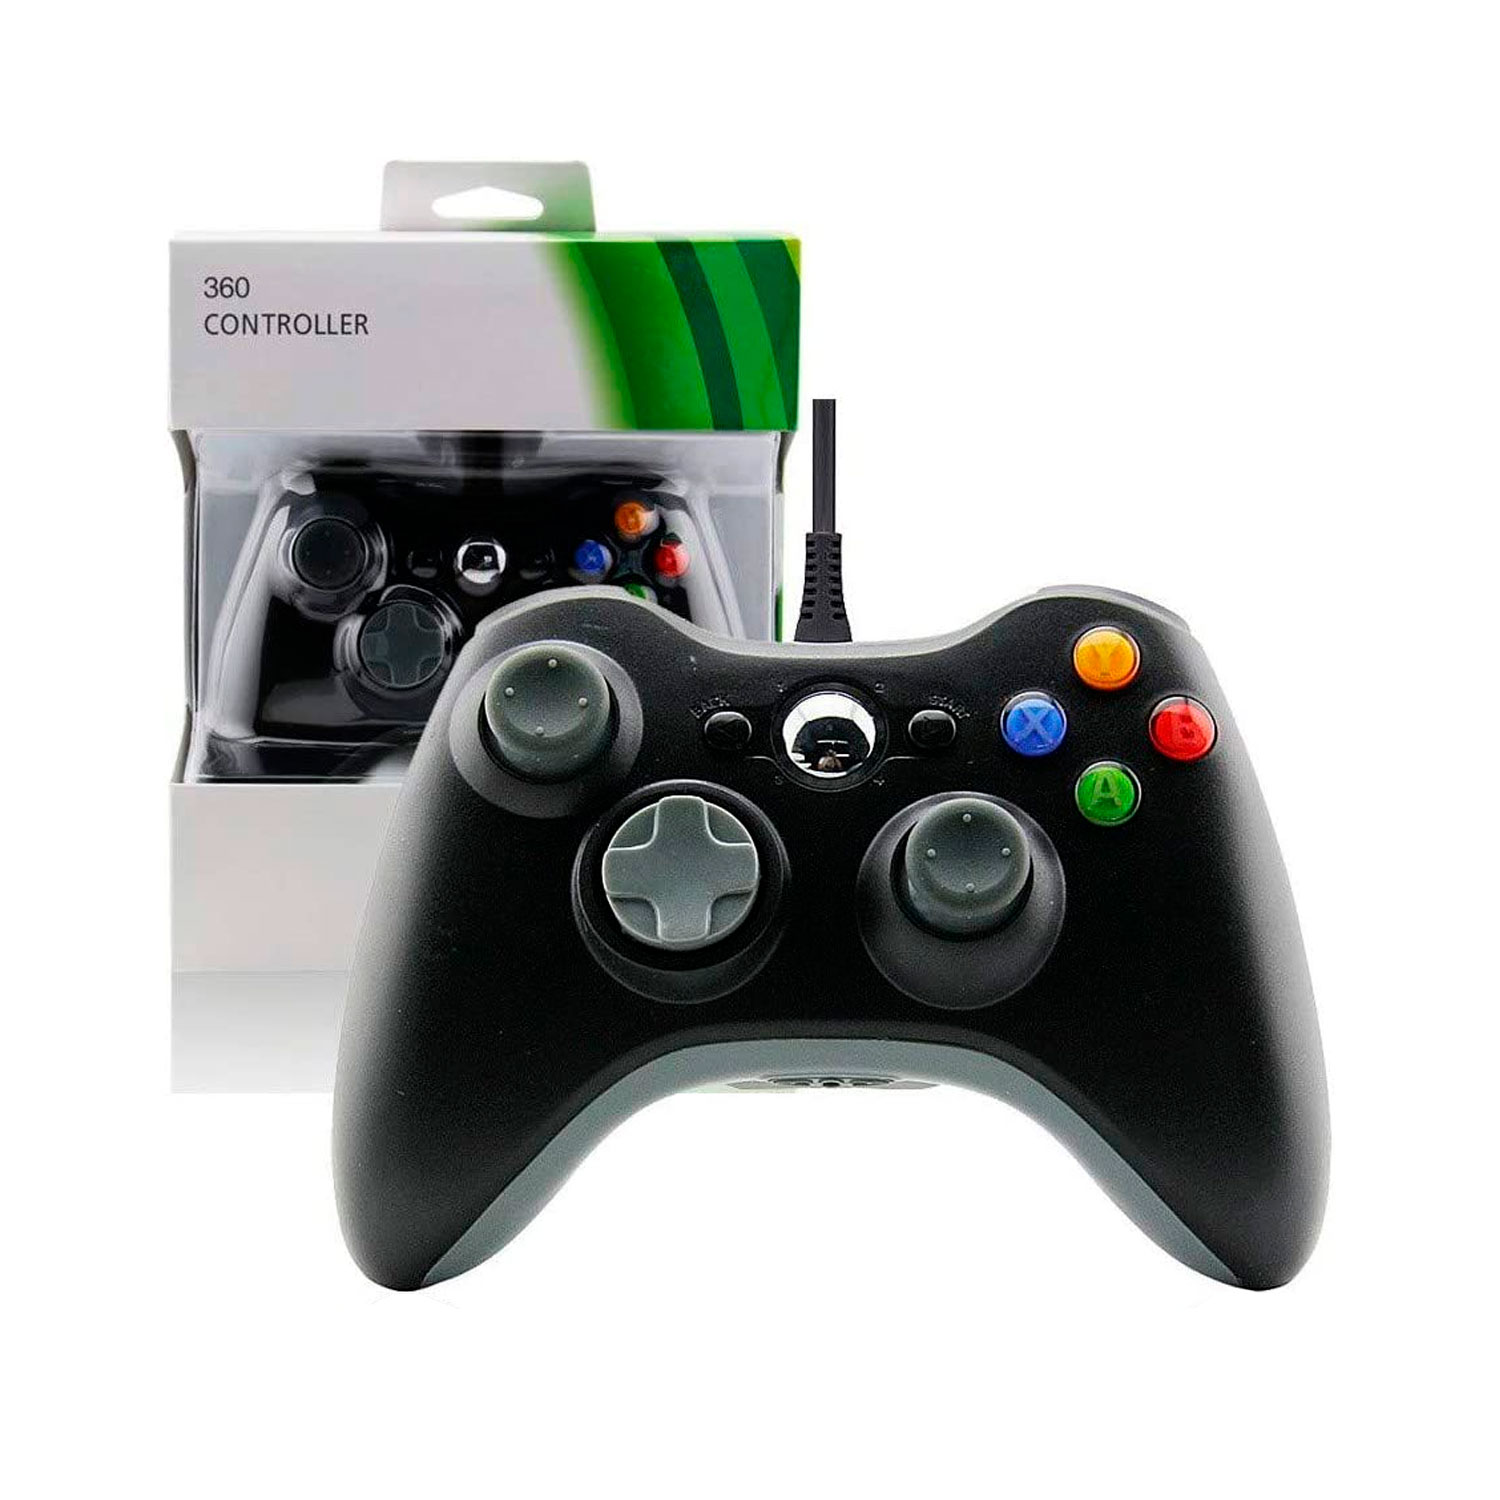 Controle Com Fio para Xbox 360 - Preto